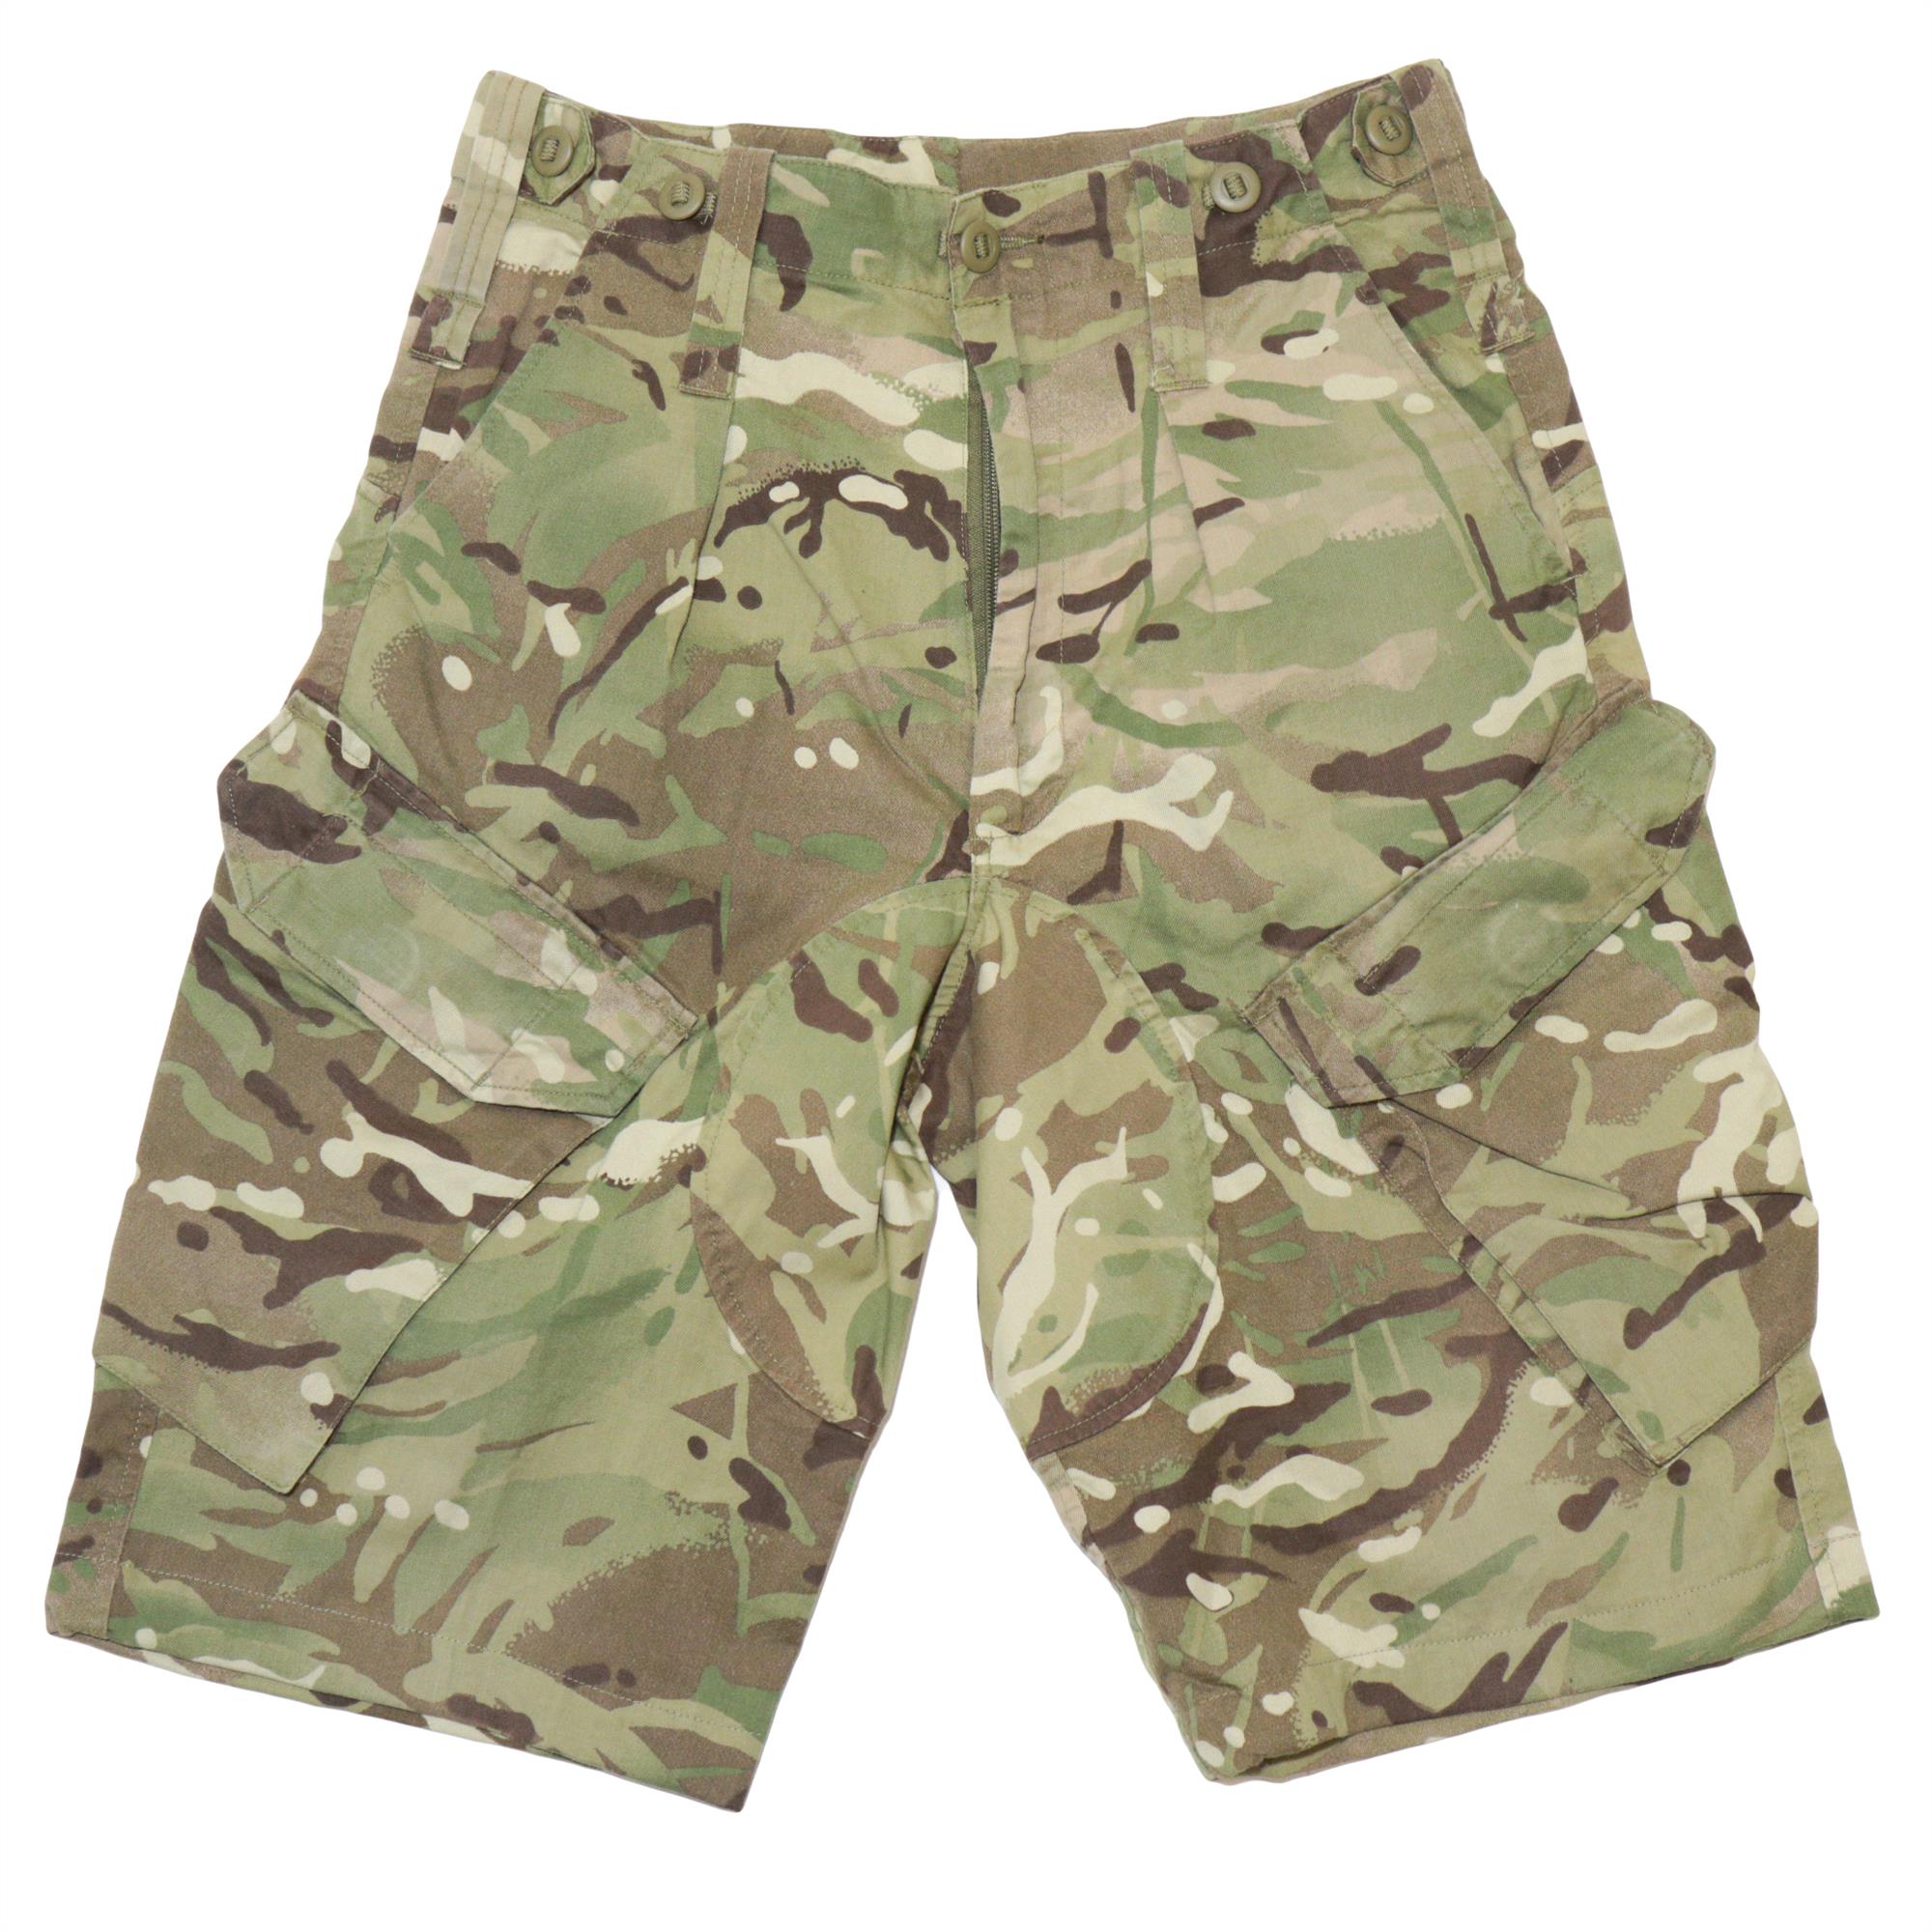 Genuine British Army Surplus MTP Camouflage Shorts - Surplus & Lost